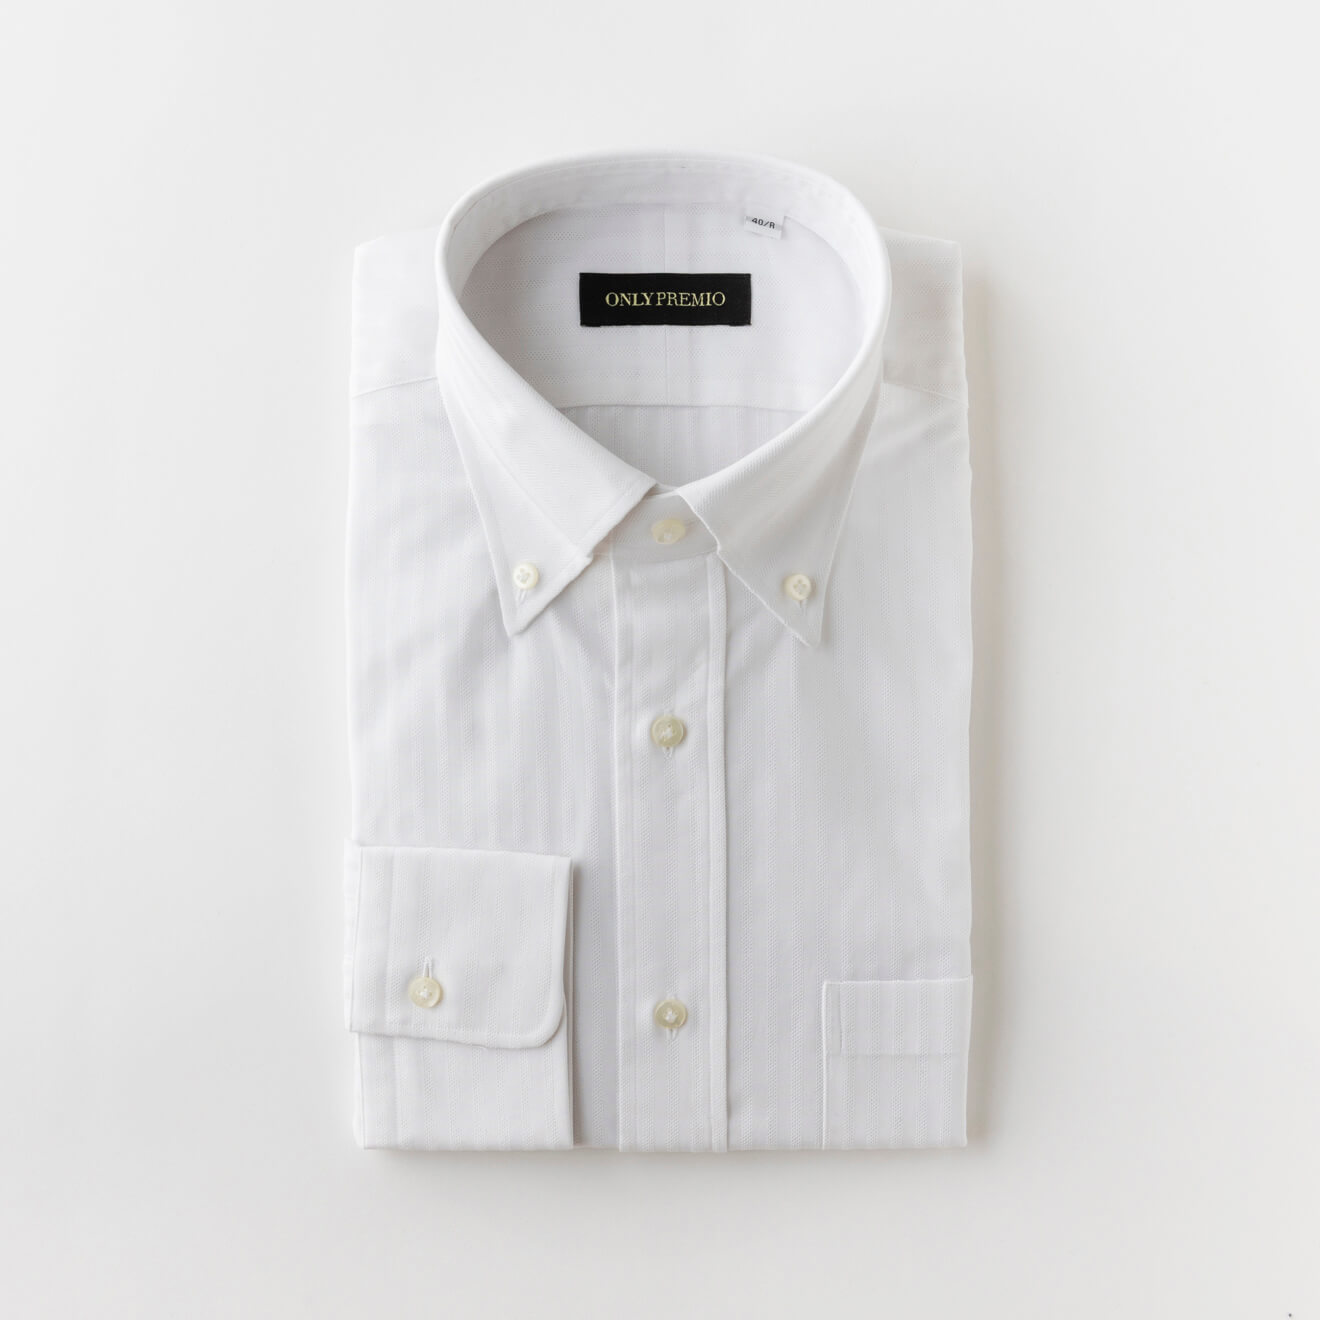 【100番手双糸】EASY CARE WHITE からみ織りボタンダウンシャツ